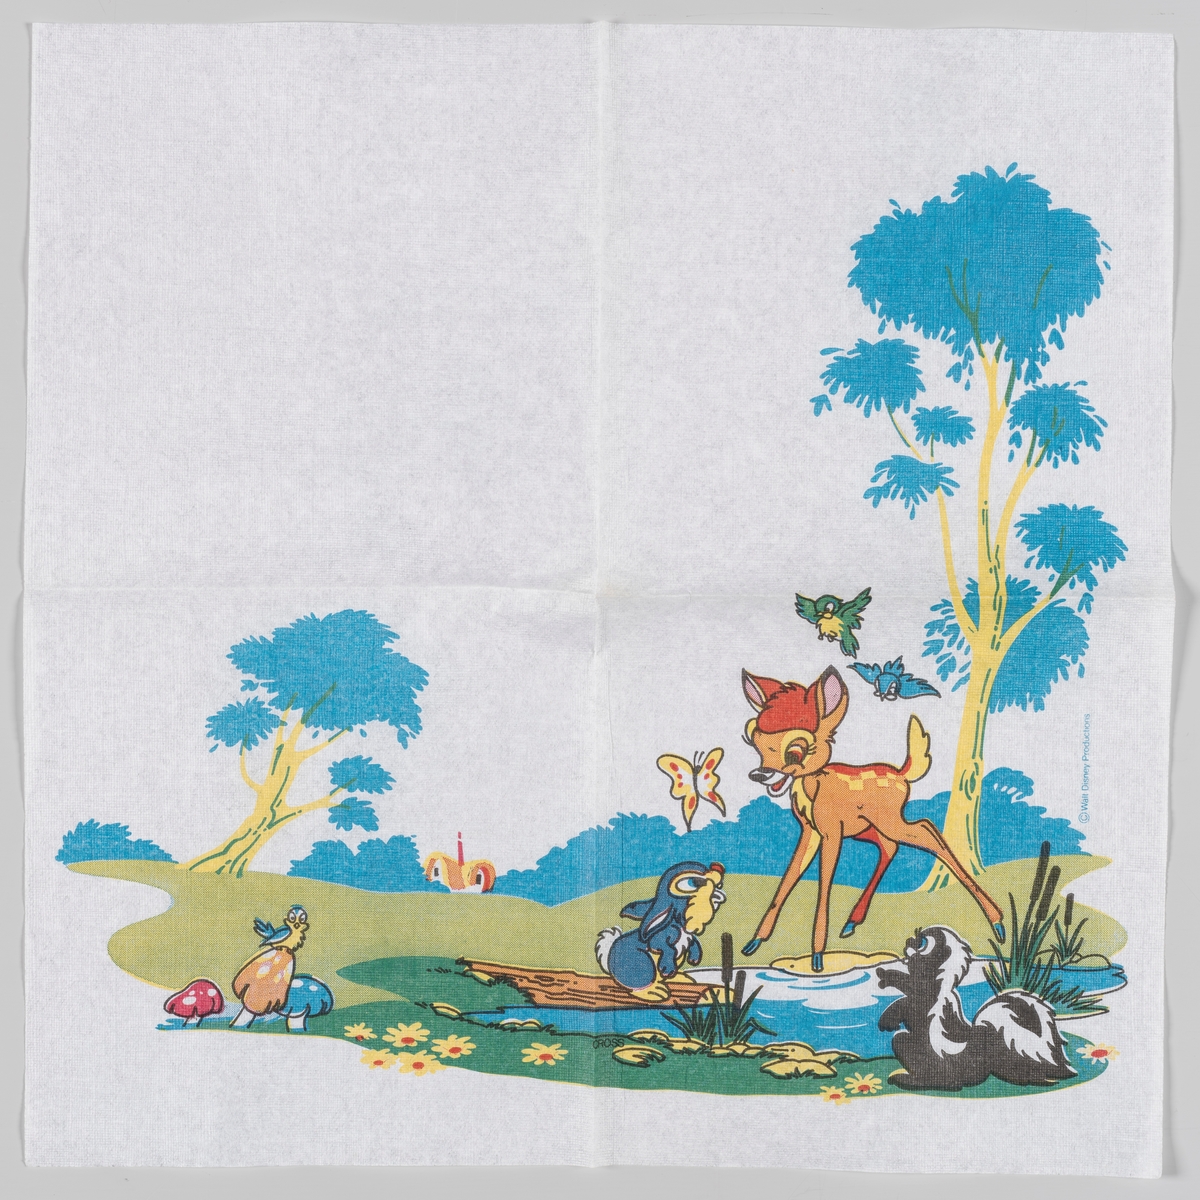 Bambi og Trampe

Animasjonsfilmen Bambi fra Walt Disney hadde premiere i 1942.